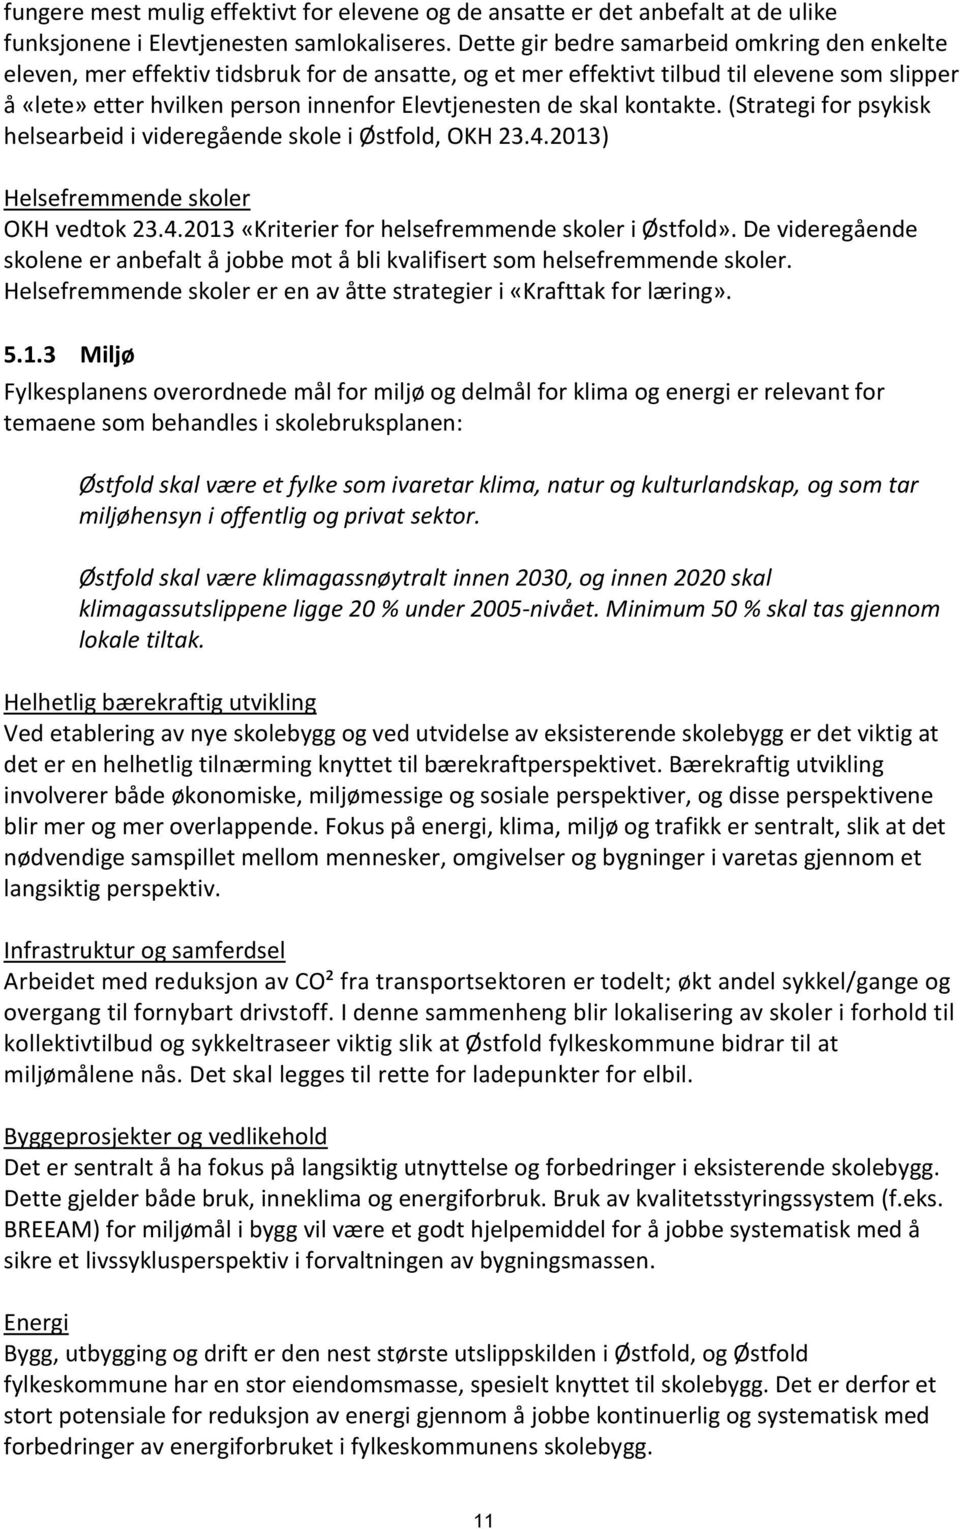 skal kontakte. (Strategi for psykisk helsearbeid i videregående skole i Østfold, OKH 23.4.2013) Helsefremmende skoler OKH vedtok 23.4.2013 «Kriterier for helsefremmende skoler i Østfold».